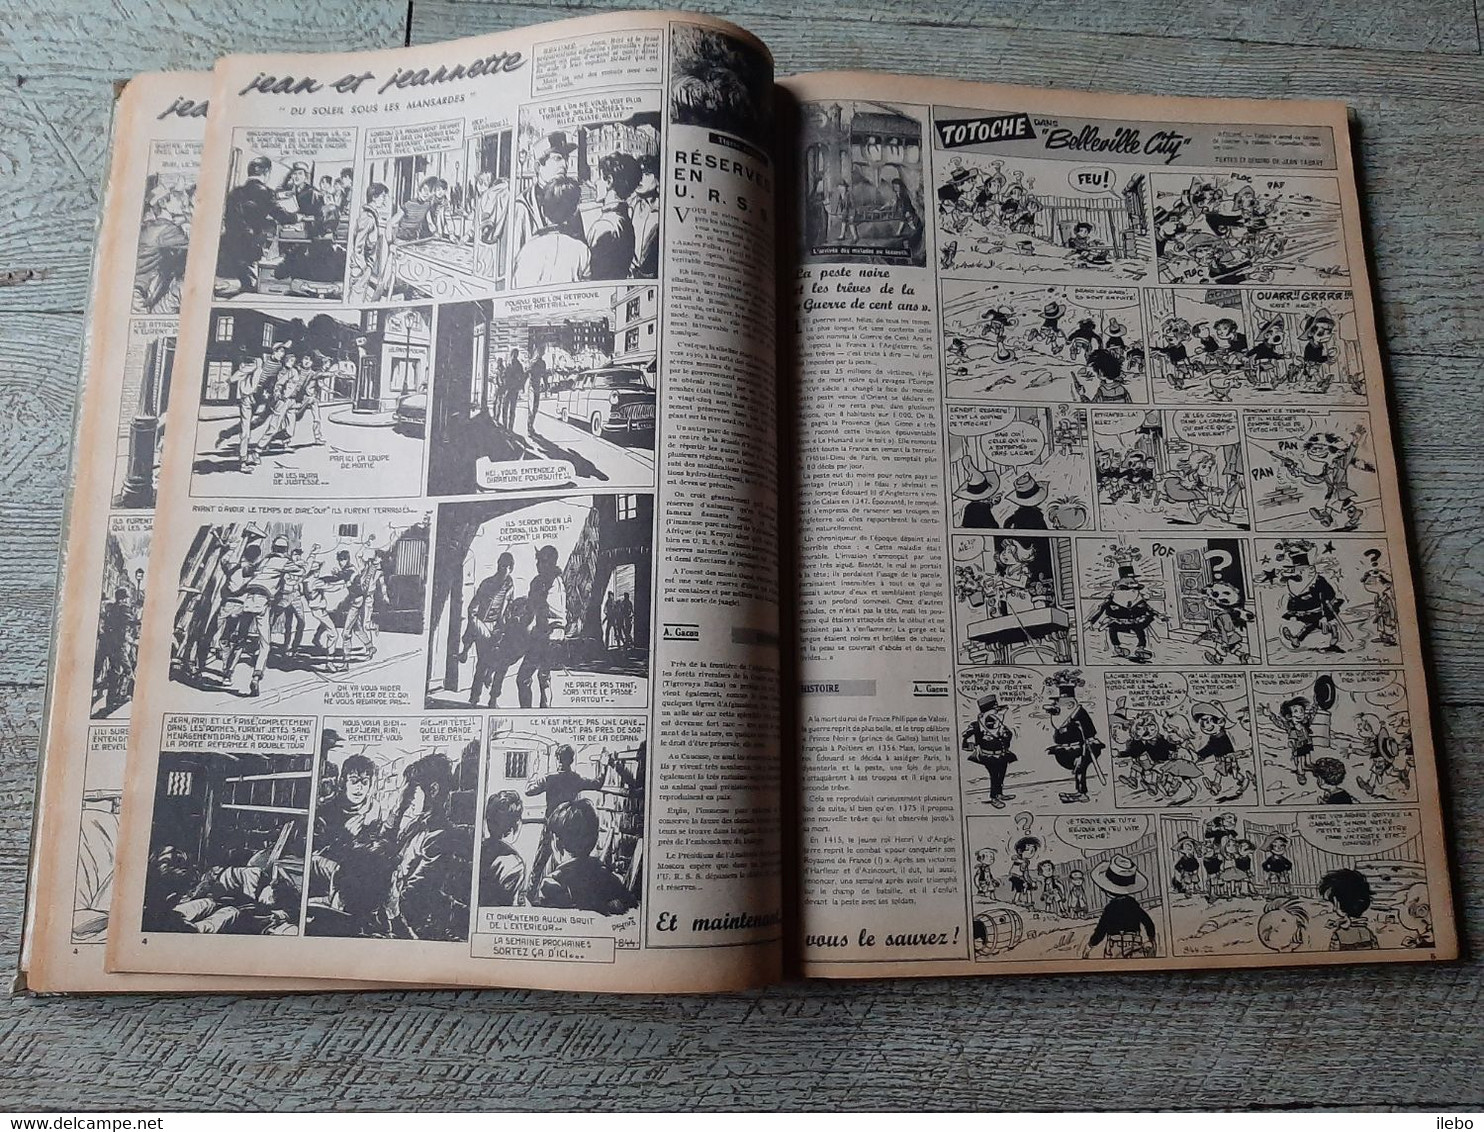 reliure éditeur N° 7 album vaillant 1961 du numéro 837 à 849 illustré jeunesse bande dessinée